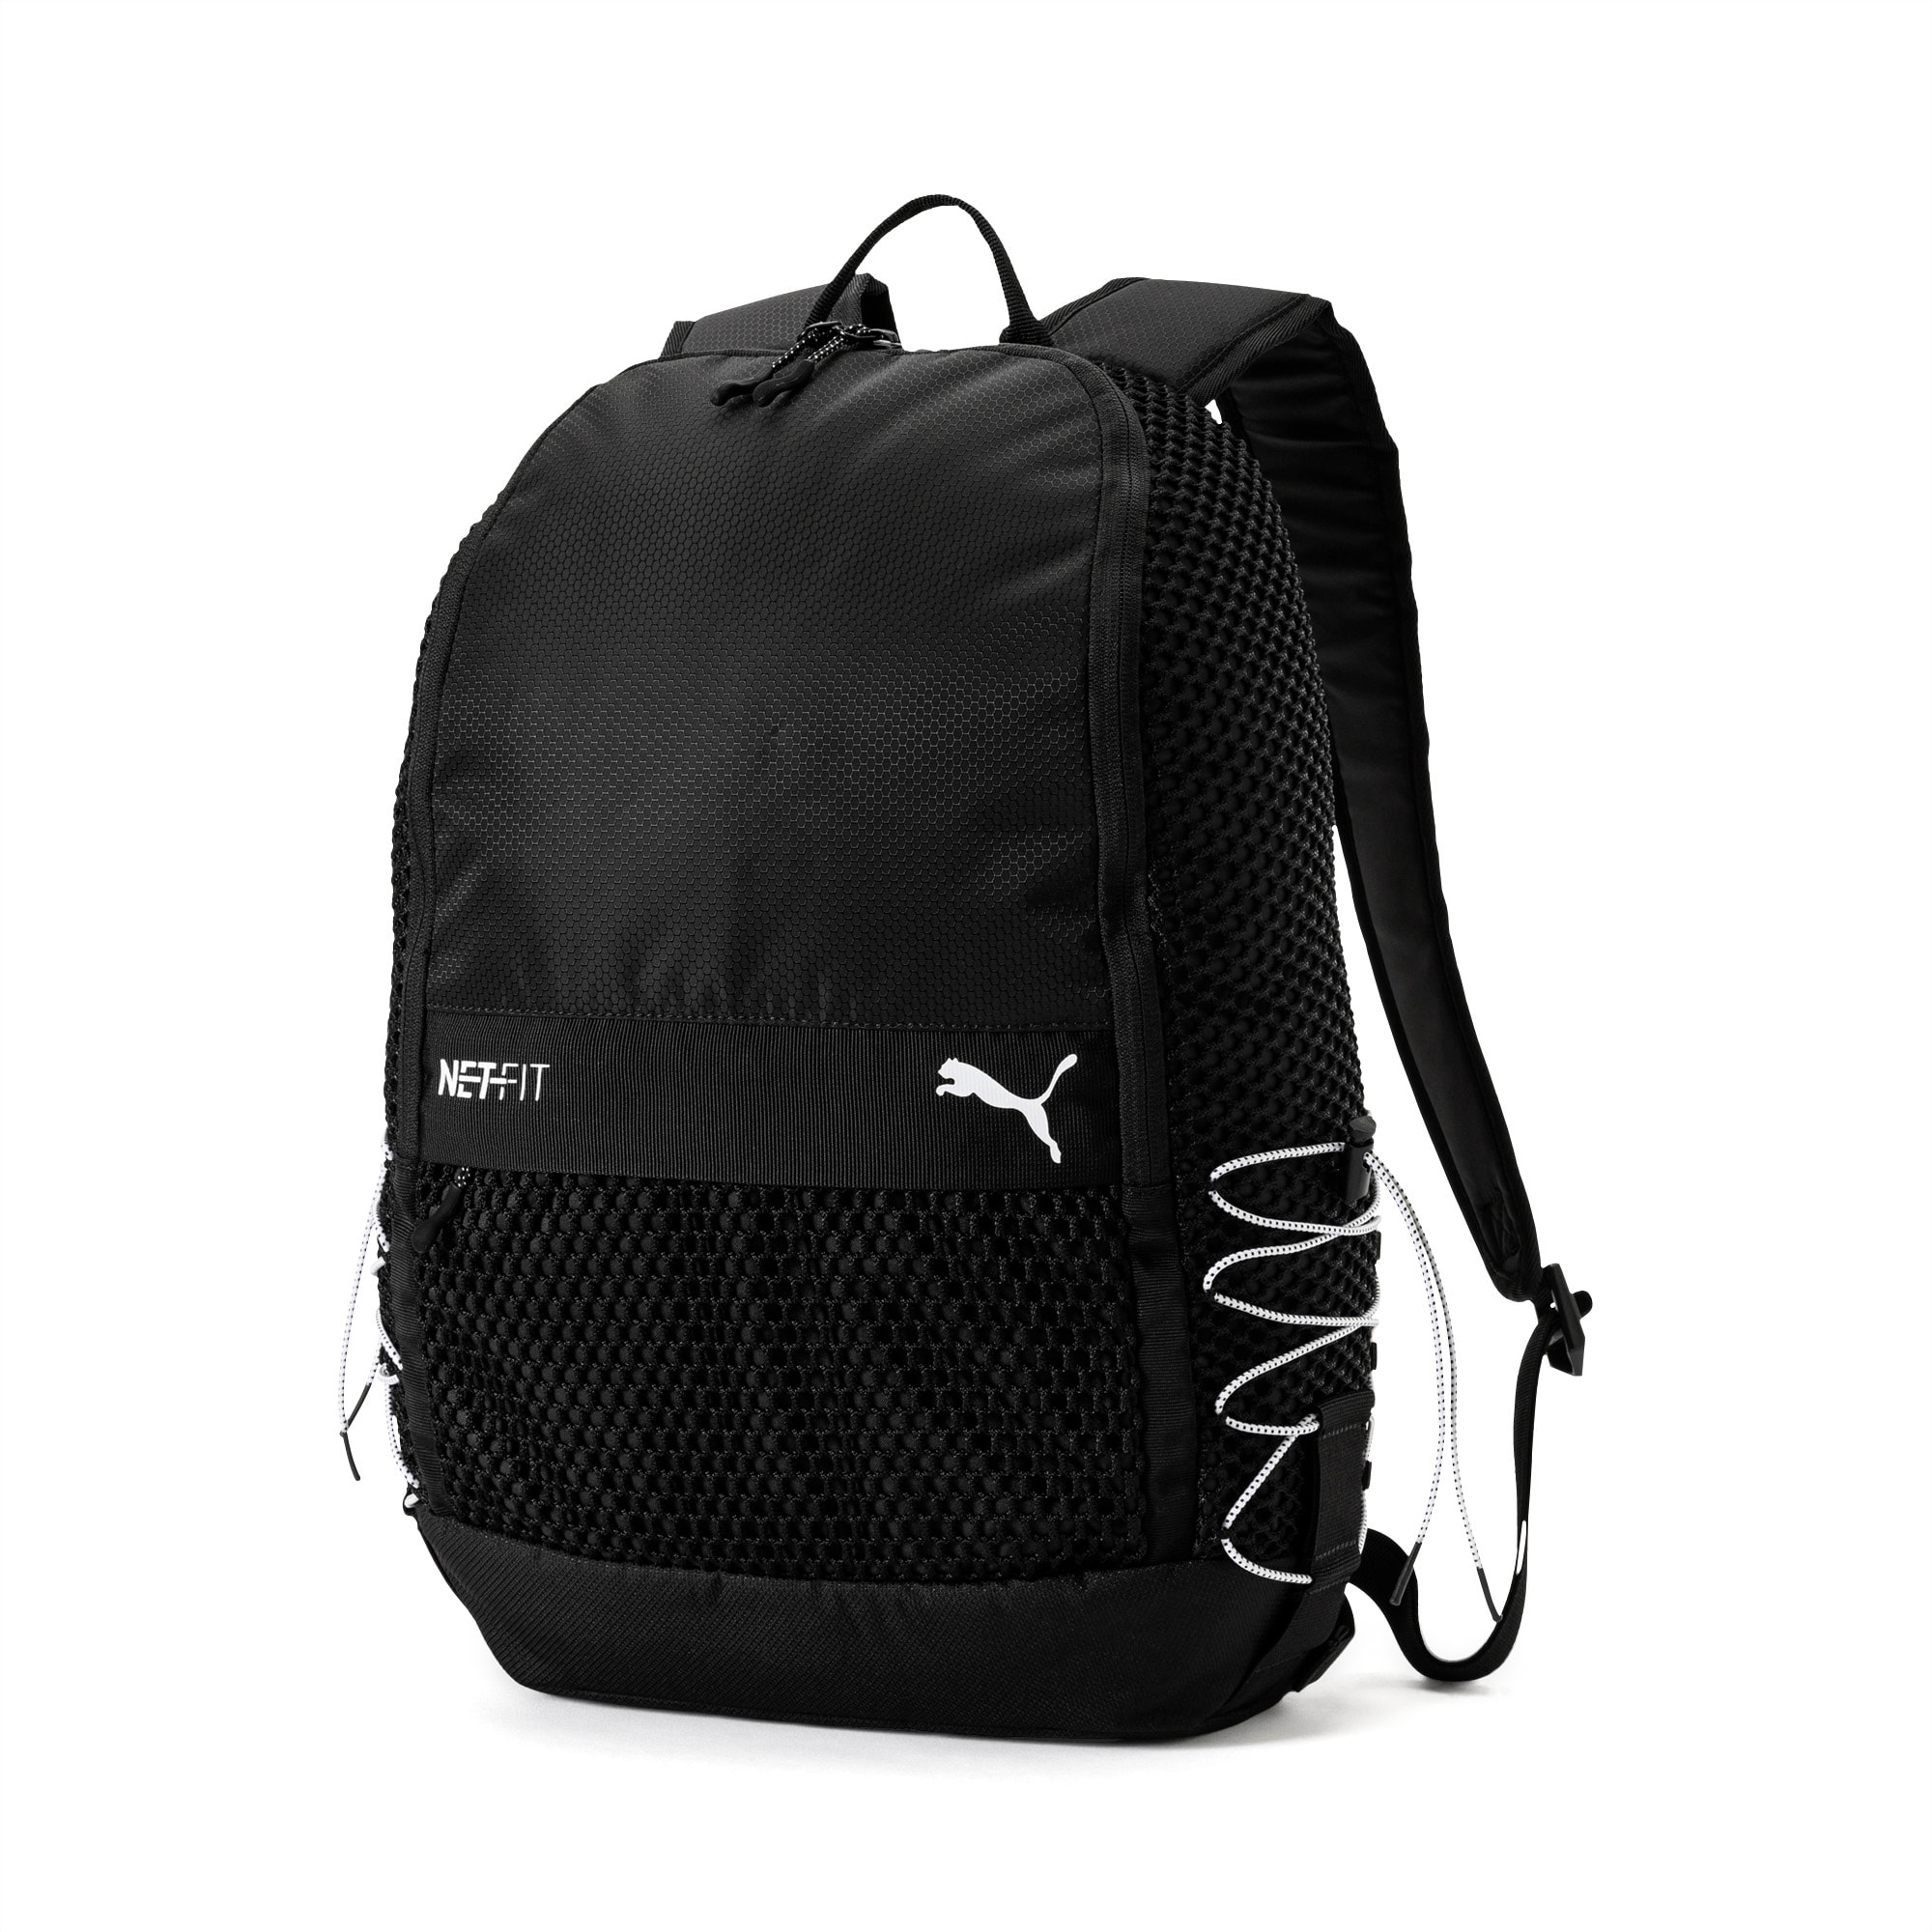 NETFIT Backpack | PUMA Backpacks | PUMA